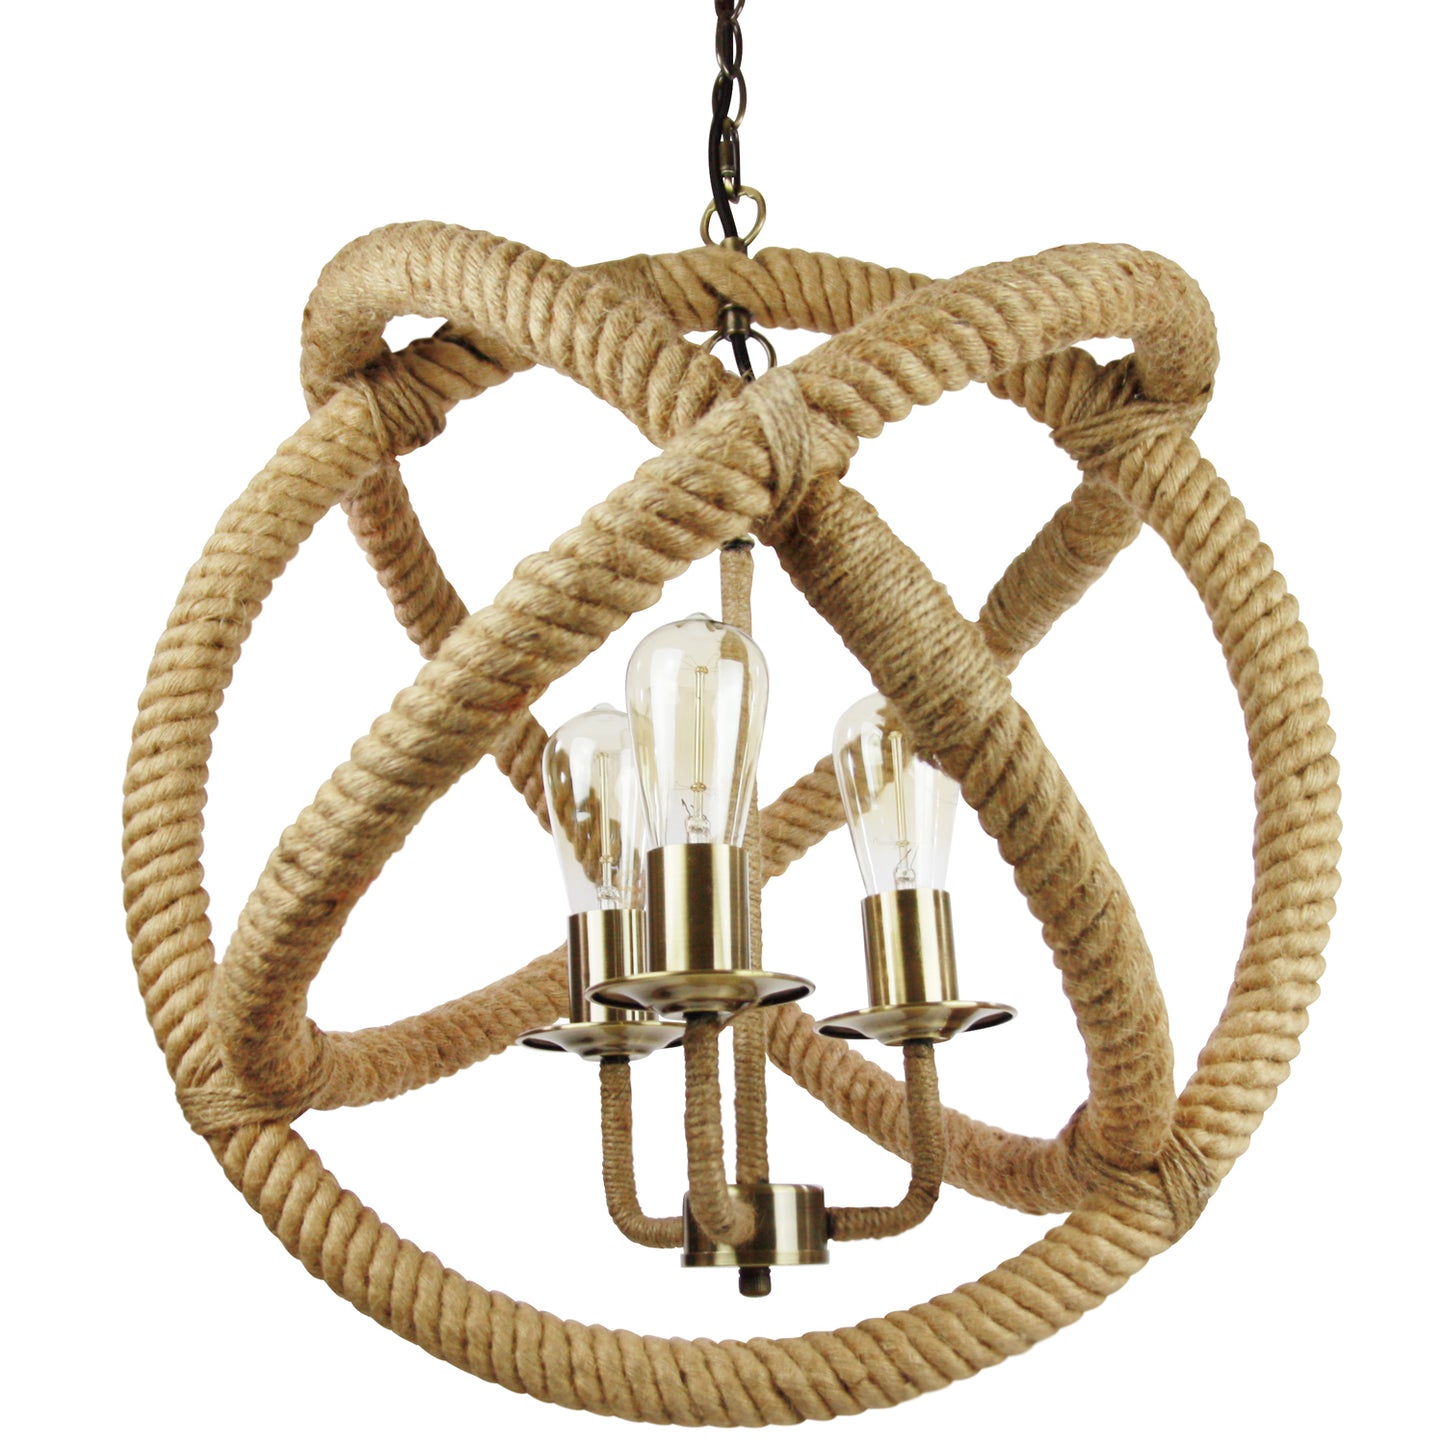 Sunlite Vintage-Inspired 28” Adjustable Cord Rustic Industrial Rope Pendant